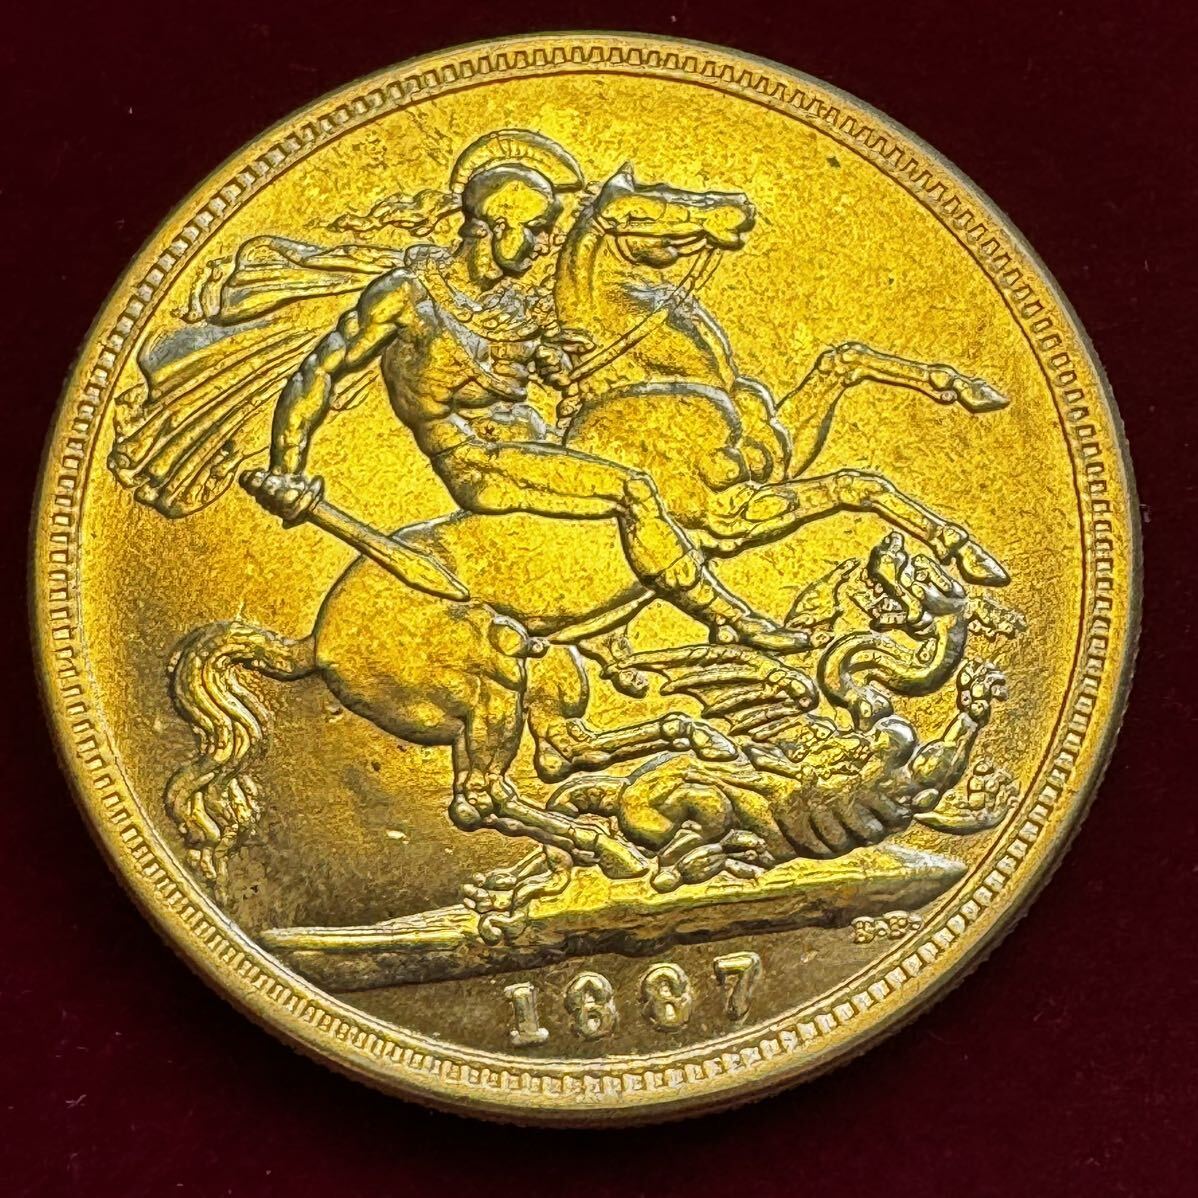 イギリス 硬貨 古銭 ヴィクトリア女王 1887年 聖ジョージ 竜殺し ナイト ドラゴン コイン 金貨 外国古銭 海外硬貨_画像2